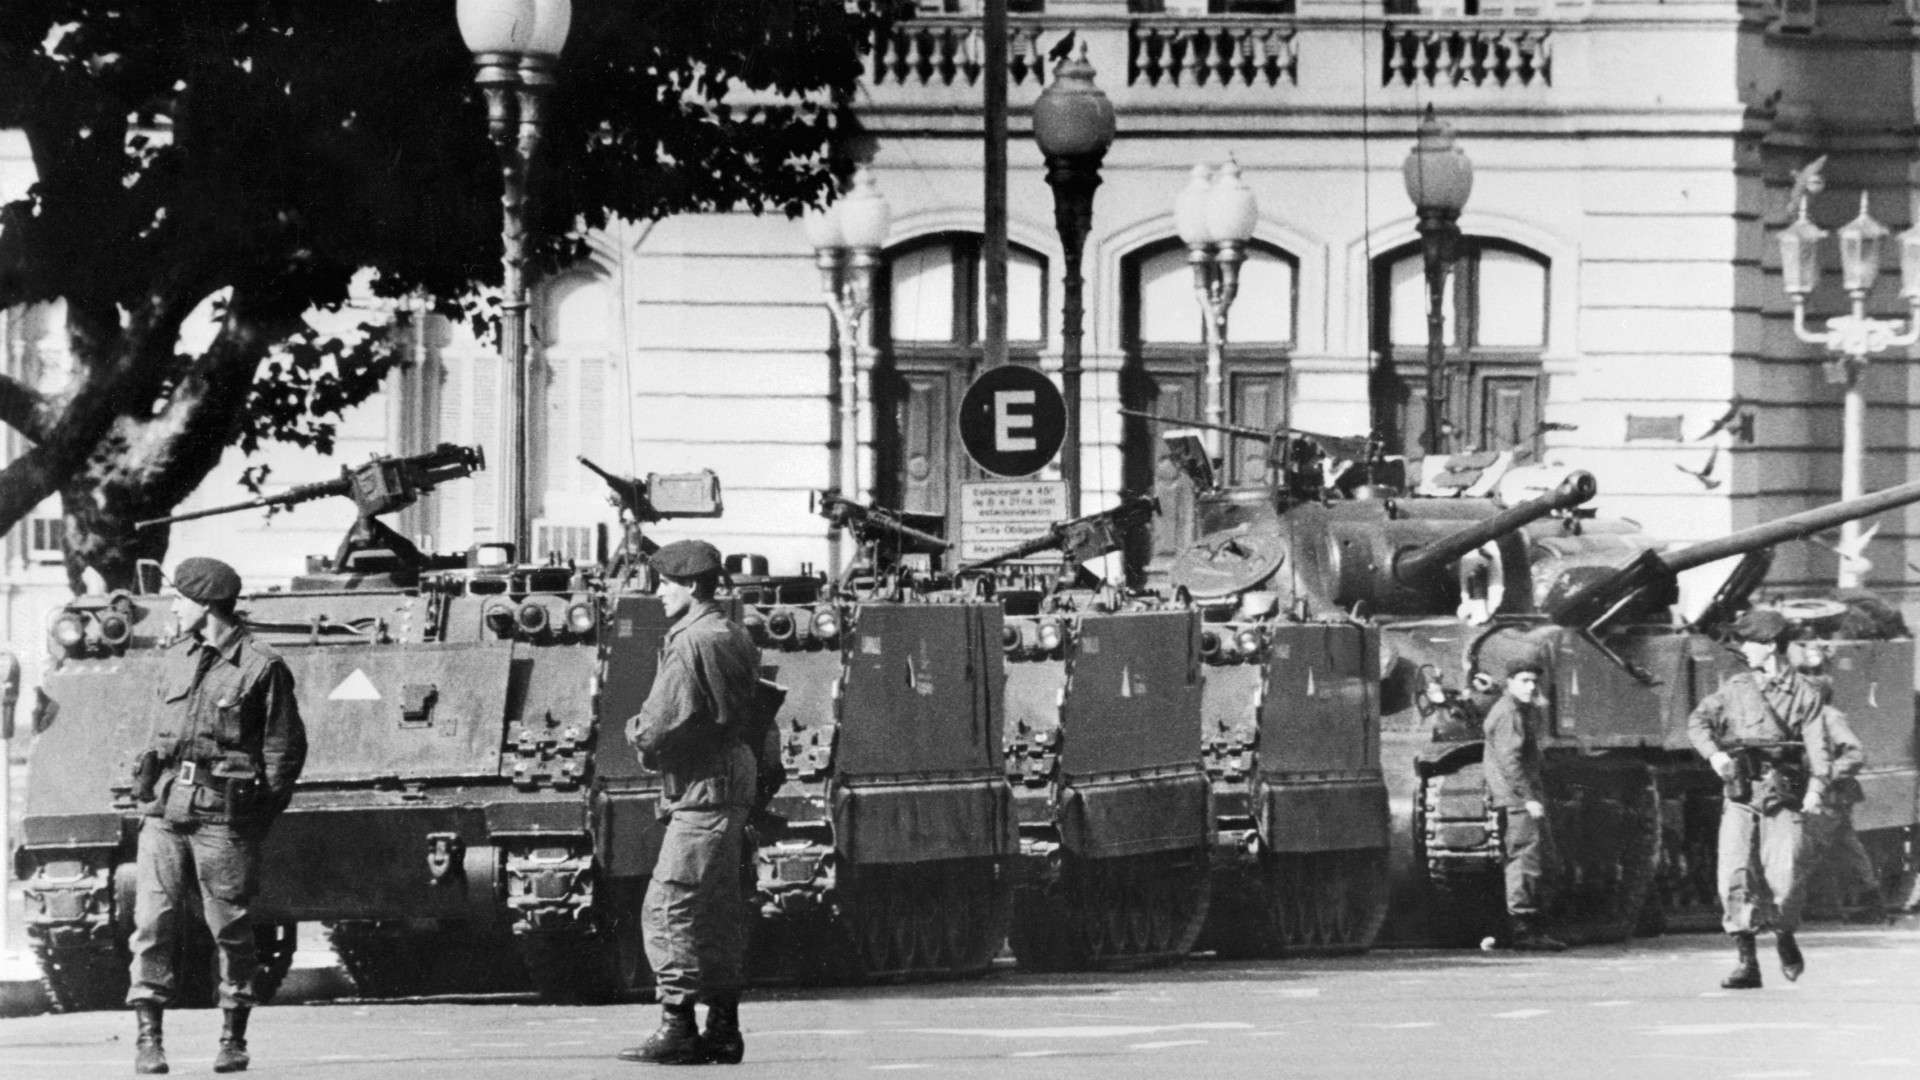 Argentina military dictatorship, 1970s